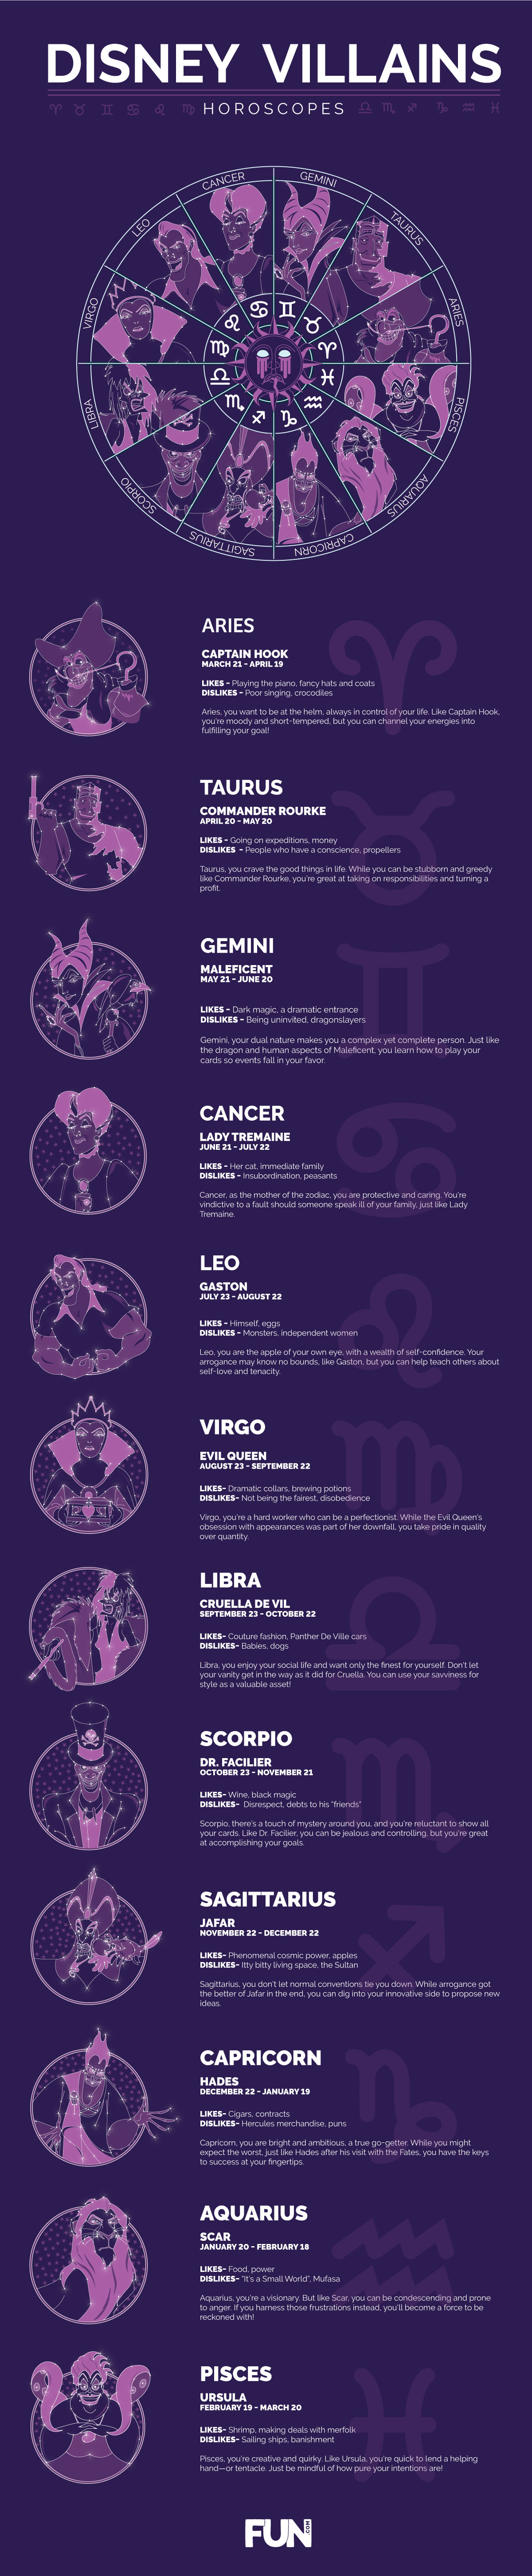 Disney Villains Horoscopes